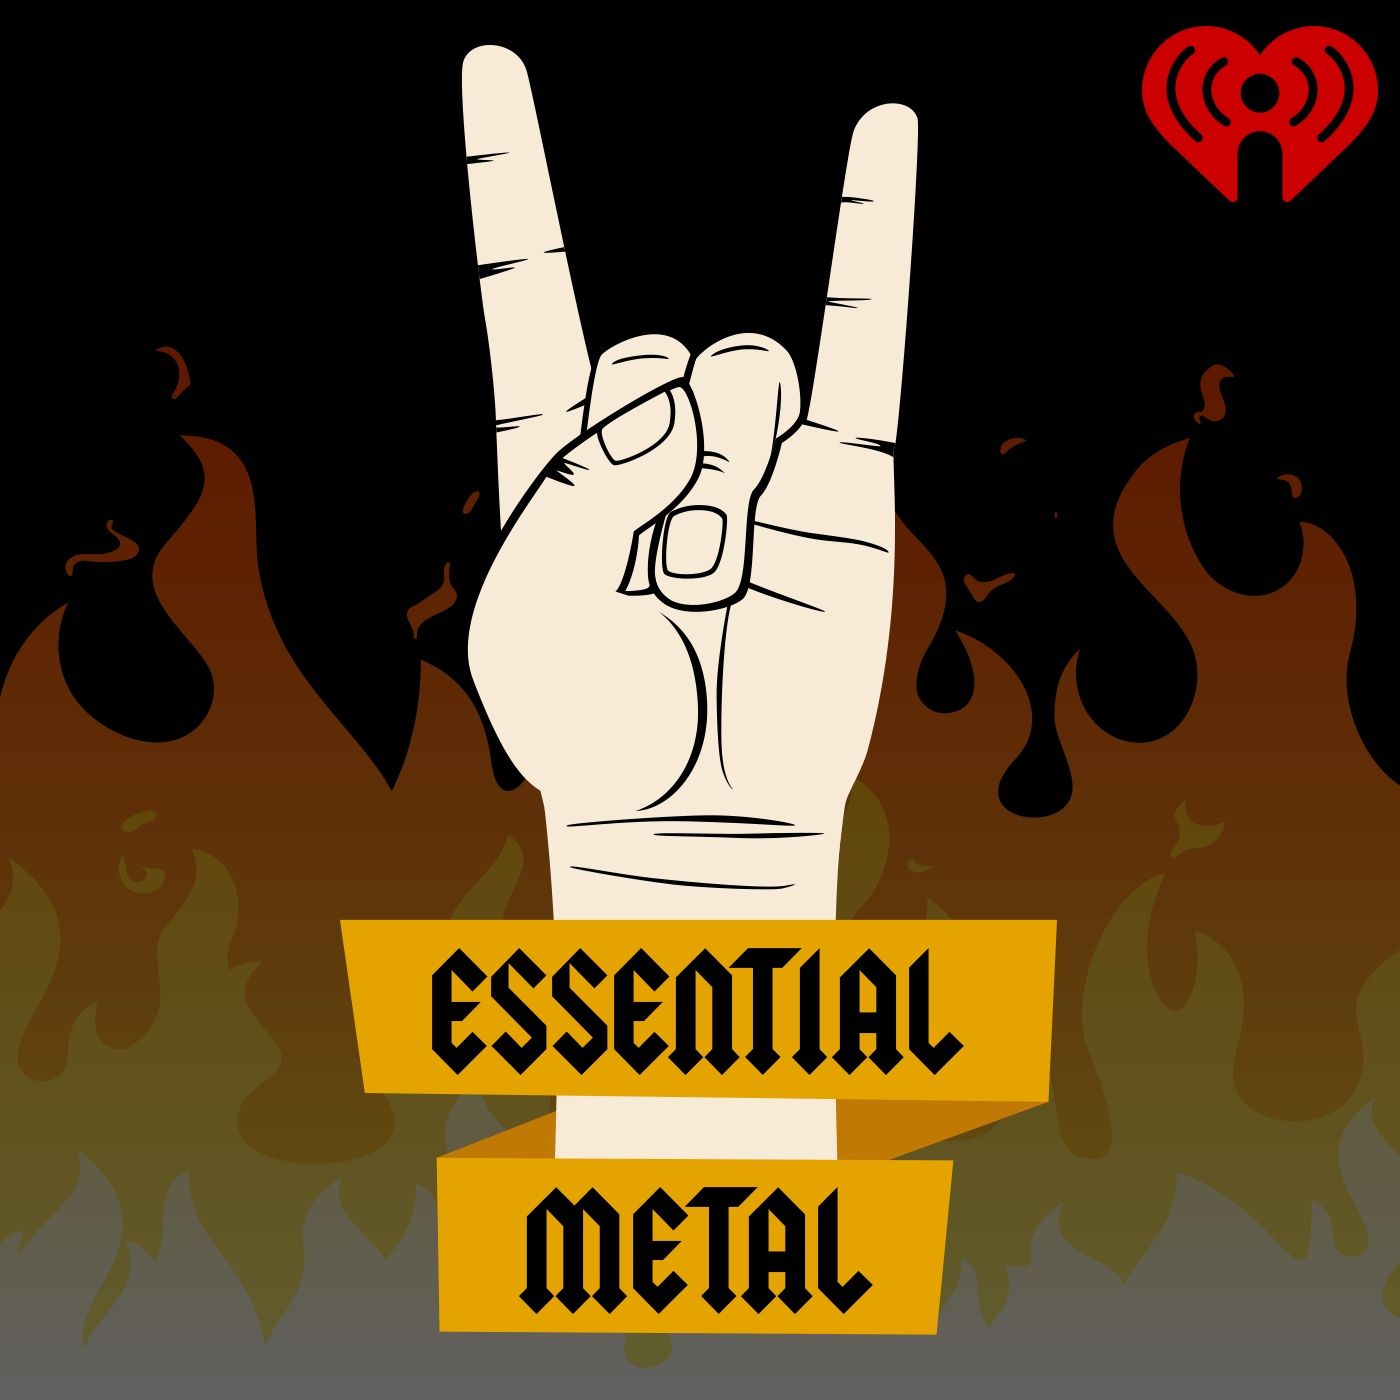 Essential Metal Ep. 5